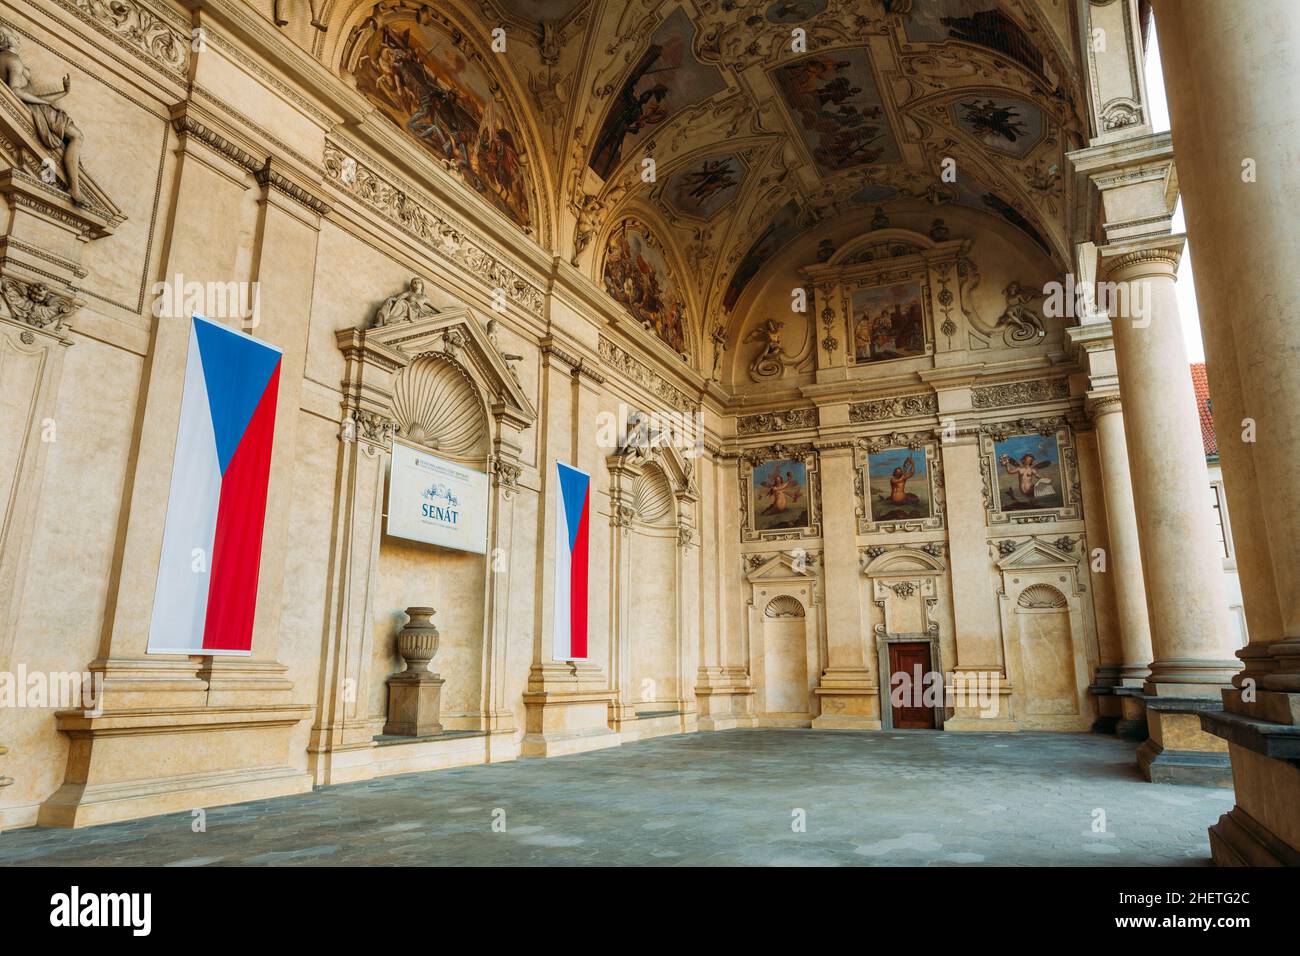 Senate of Czech Republic in Prague Stock Photo